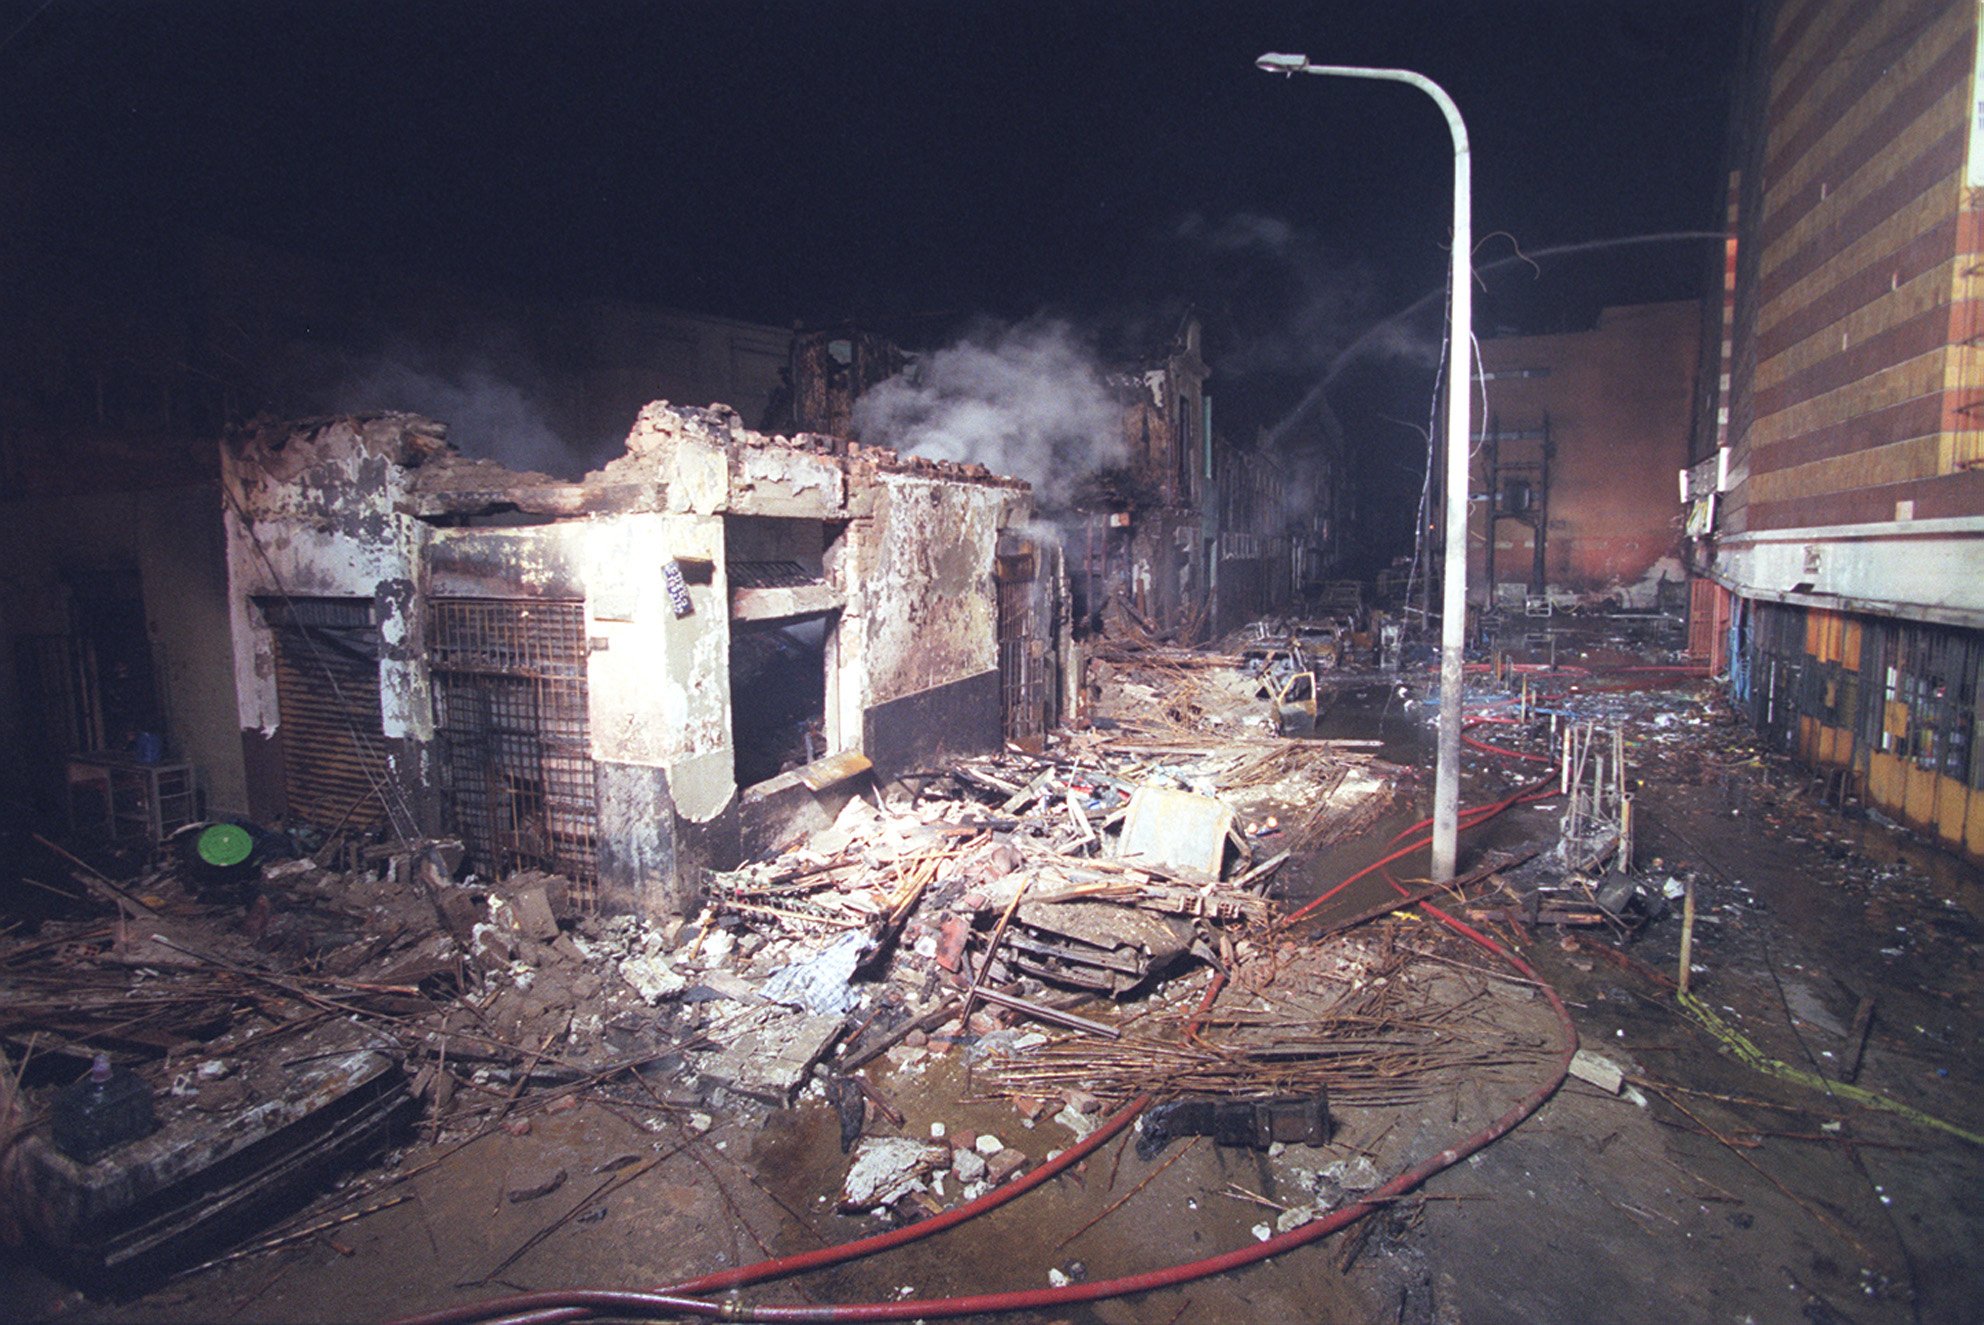 Lima_El Comercio on "Incendio en Mesa Redonda: 10 fotos que dejó tragedia del 2001 https://t.co/IIrv5wQeTv https://t.co/UxCALtSBCP" Twitter